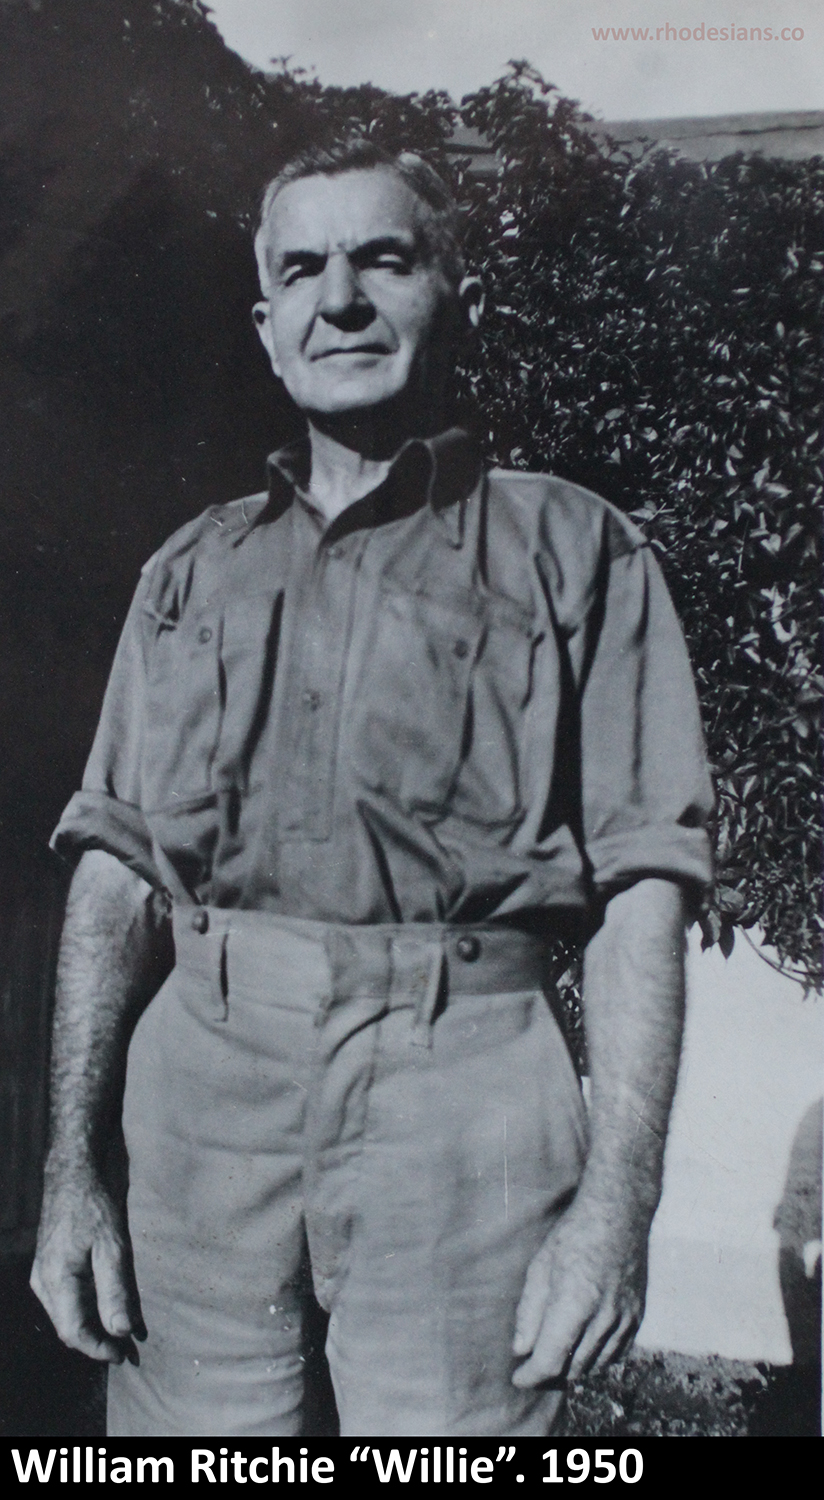 William Ritchie in 1950 at que Que mine